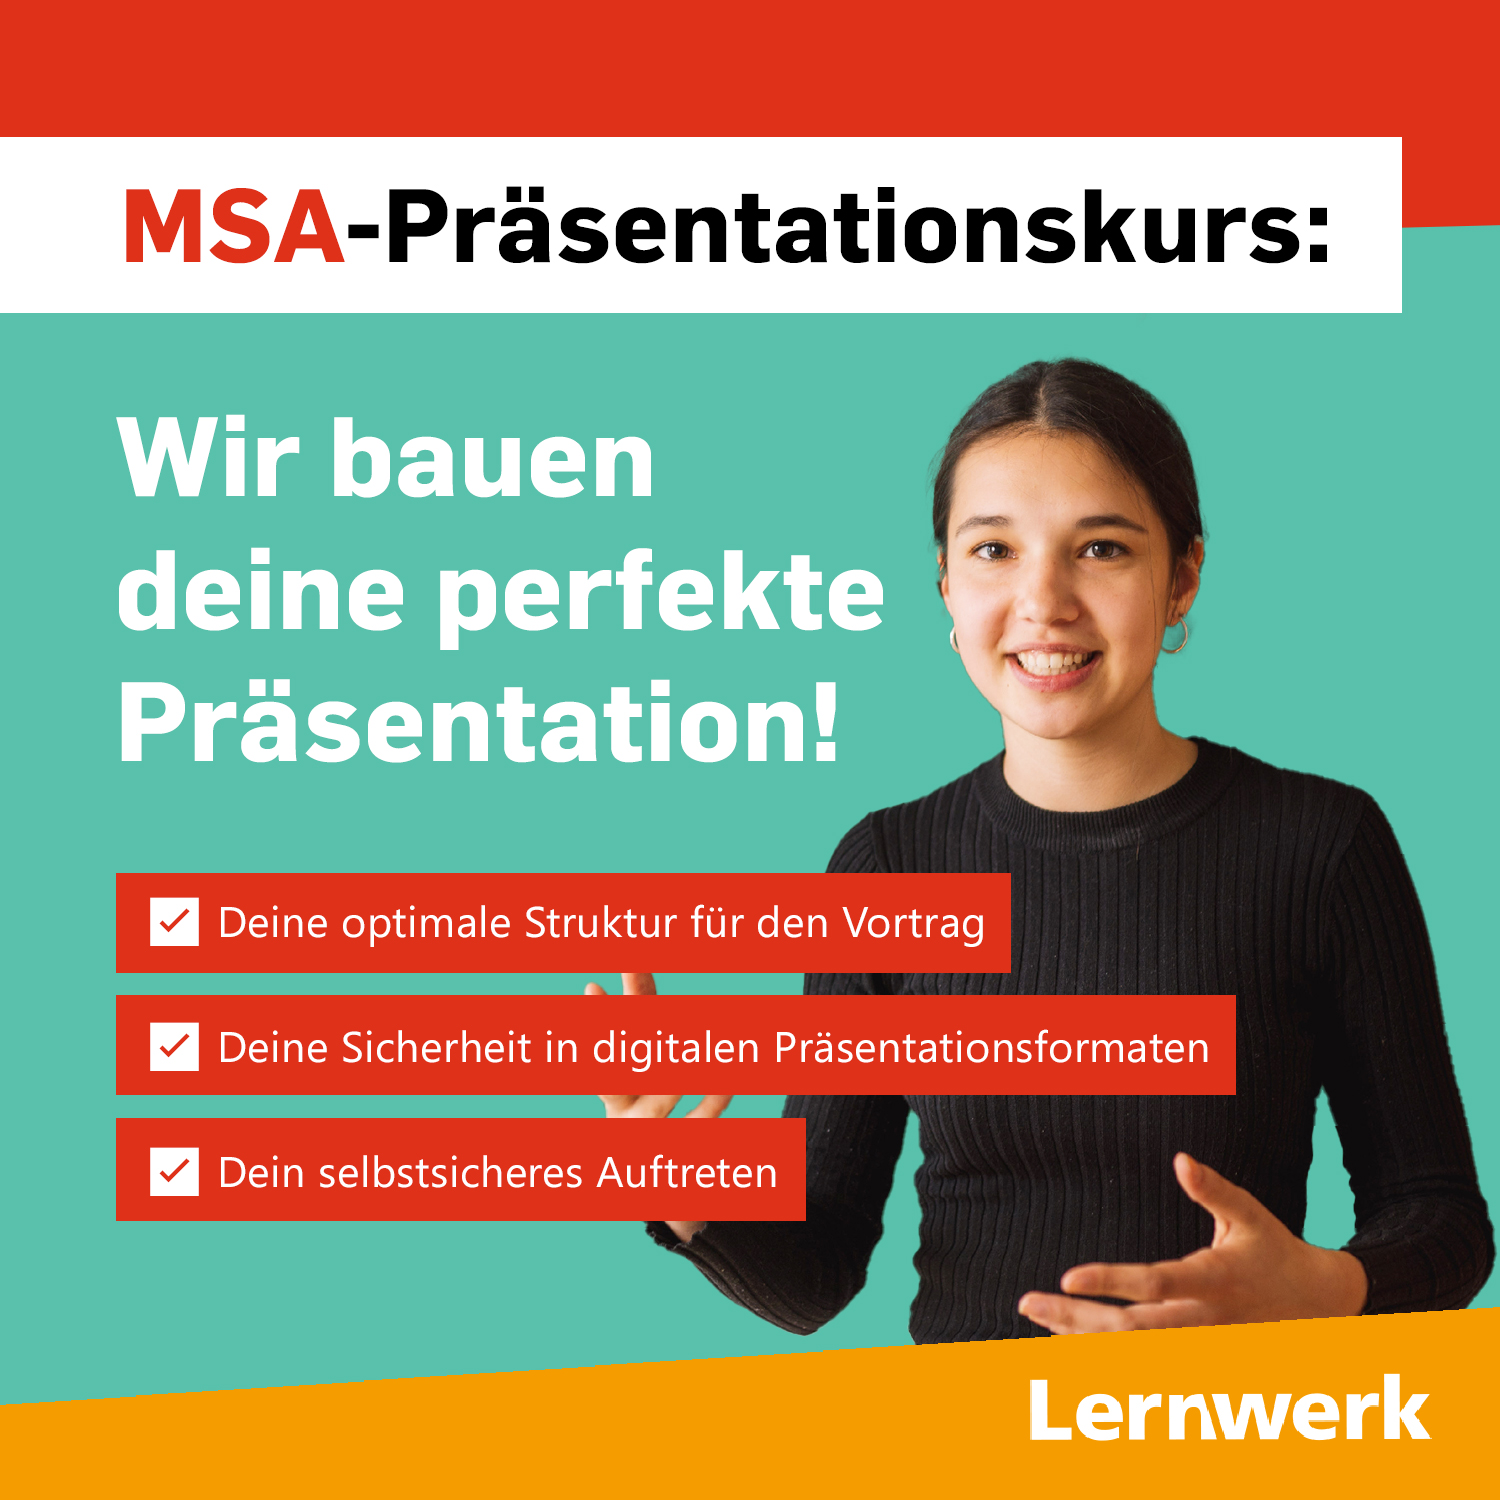 MSA-Präsentationskurs: Wir bauen deine perfekte Präsentation! Deine optimale Struktur für den Vortrag. Deine Sicherheit in digitalen Präsentationsformaten. Dein selbstsicheres Auftreten. 